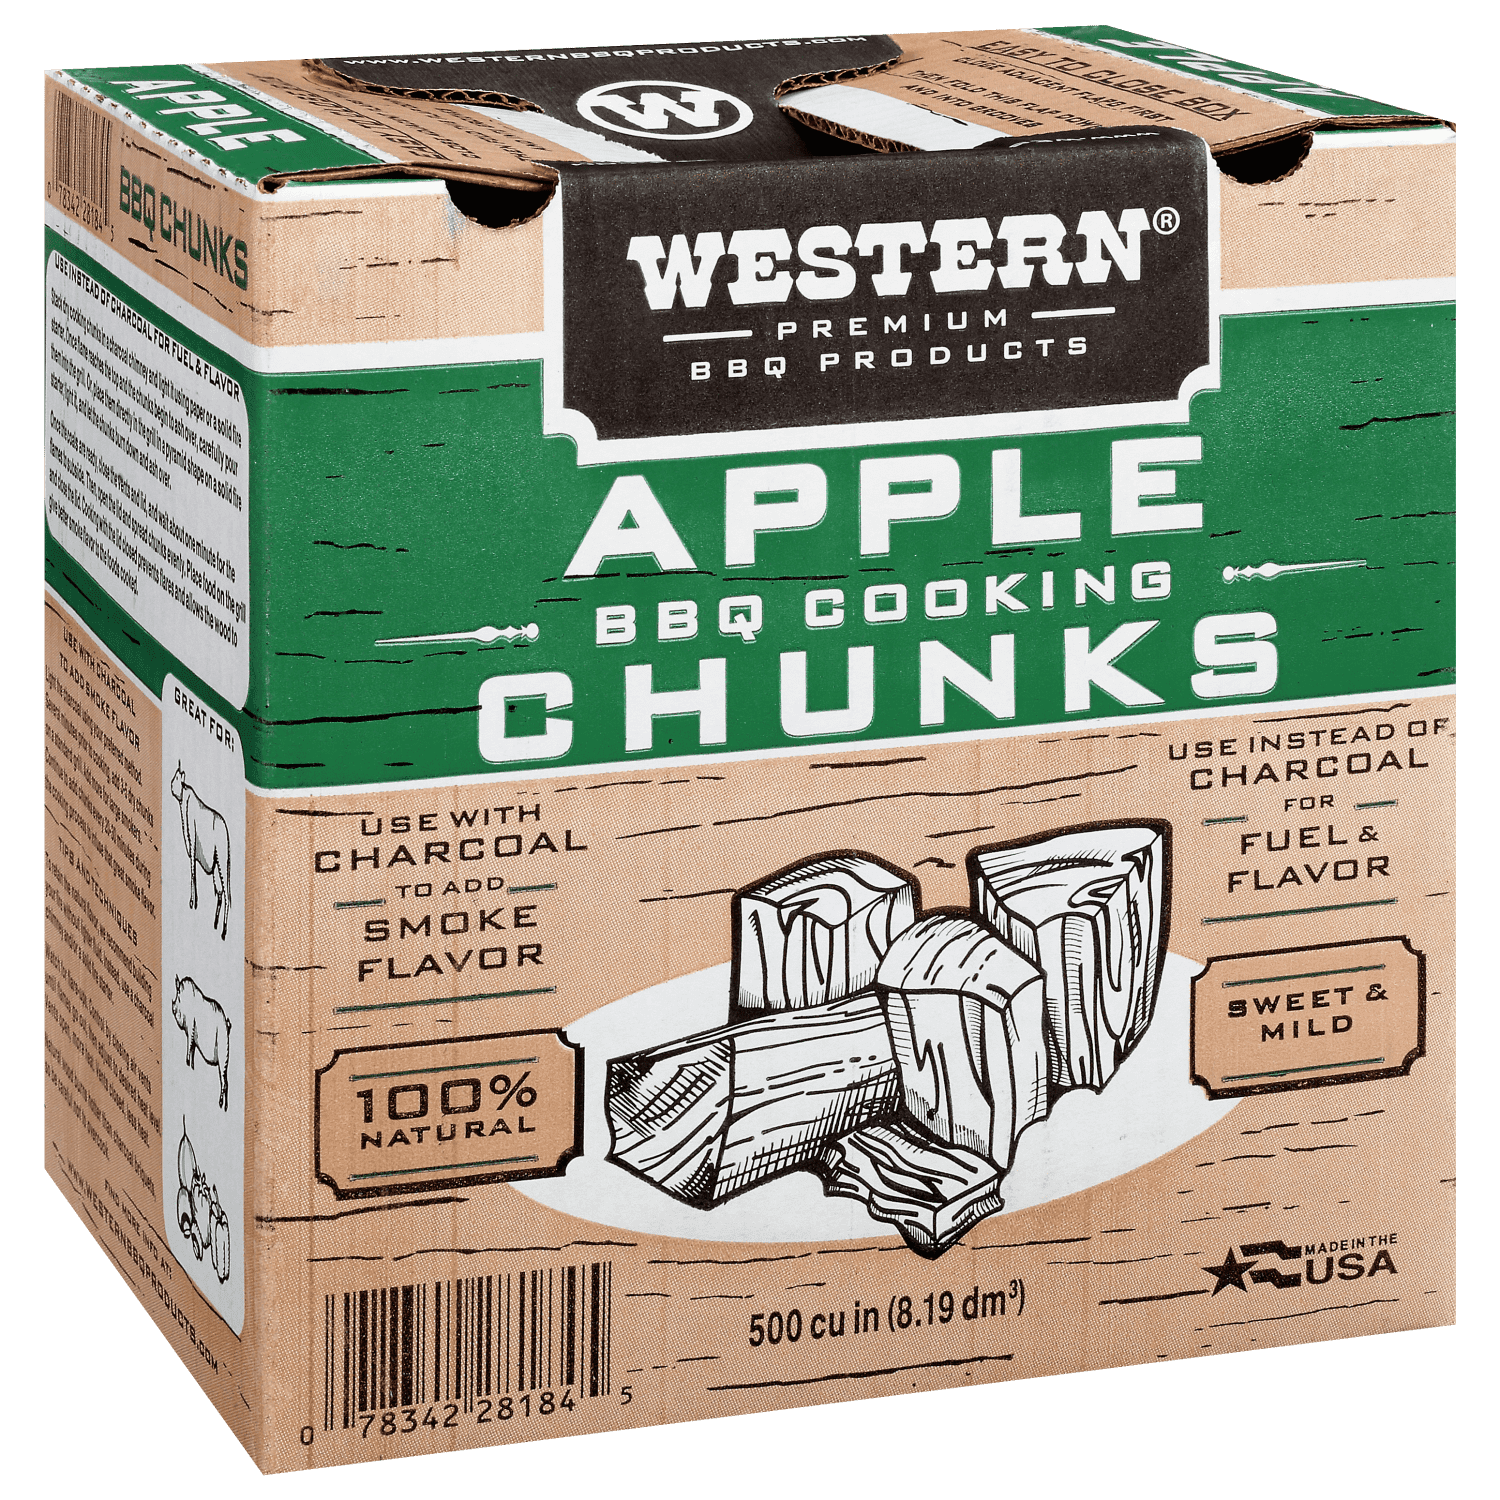 Apple Chunk Box for Western 500 CU